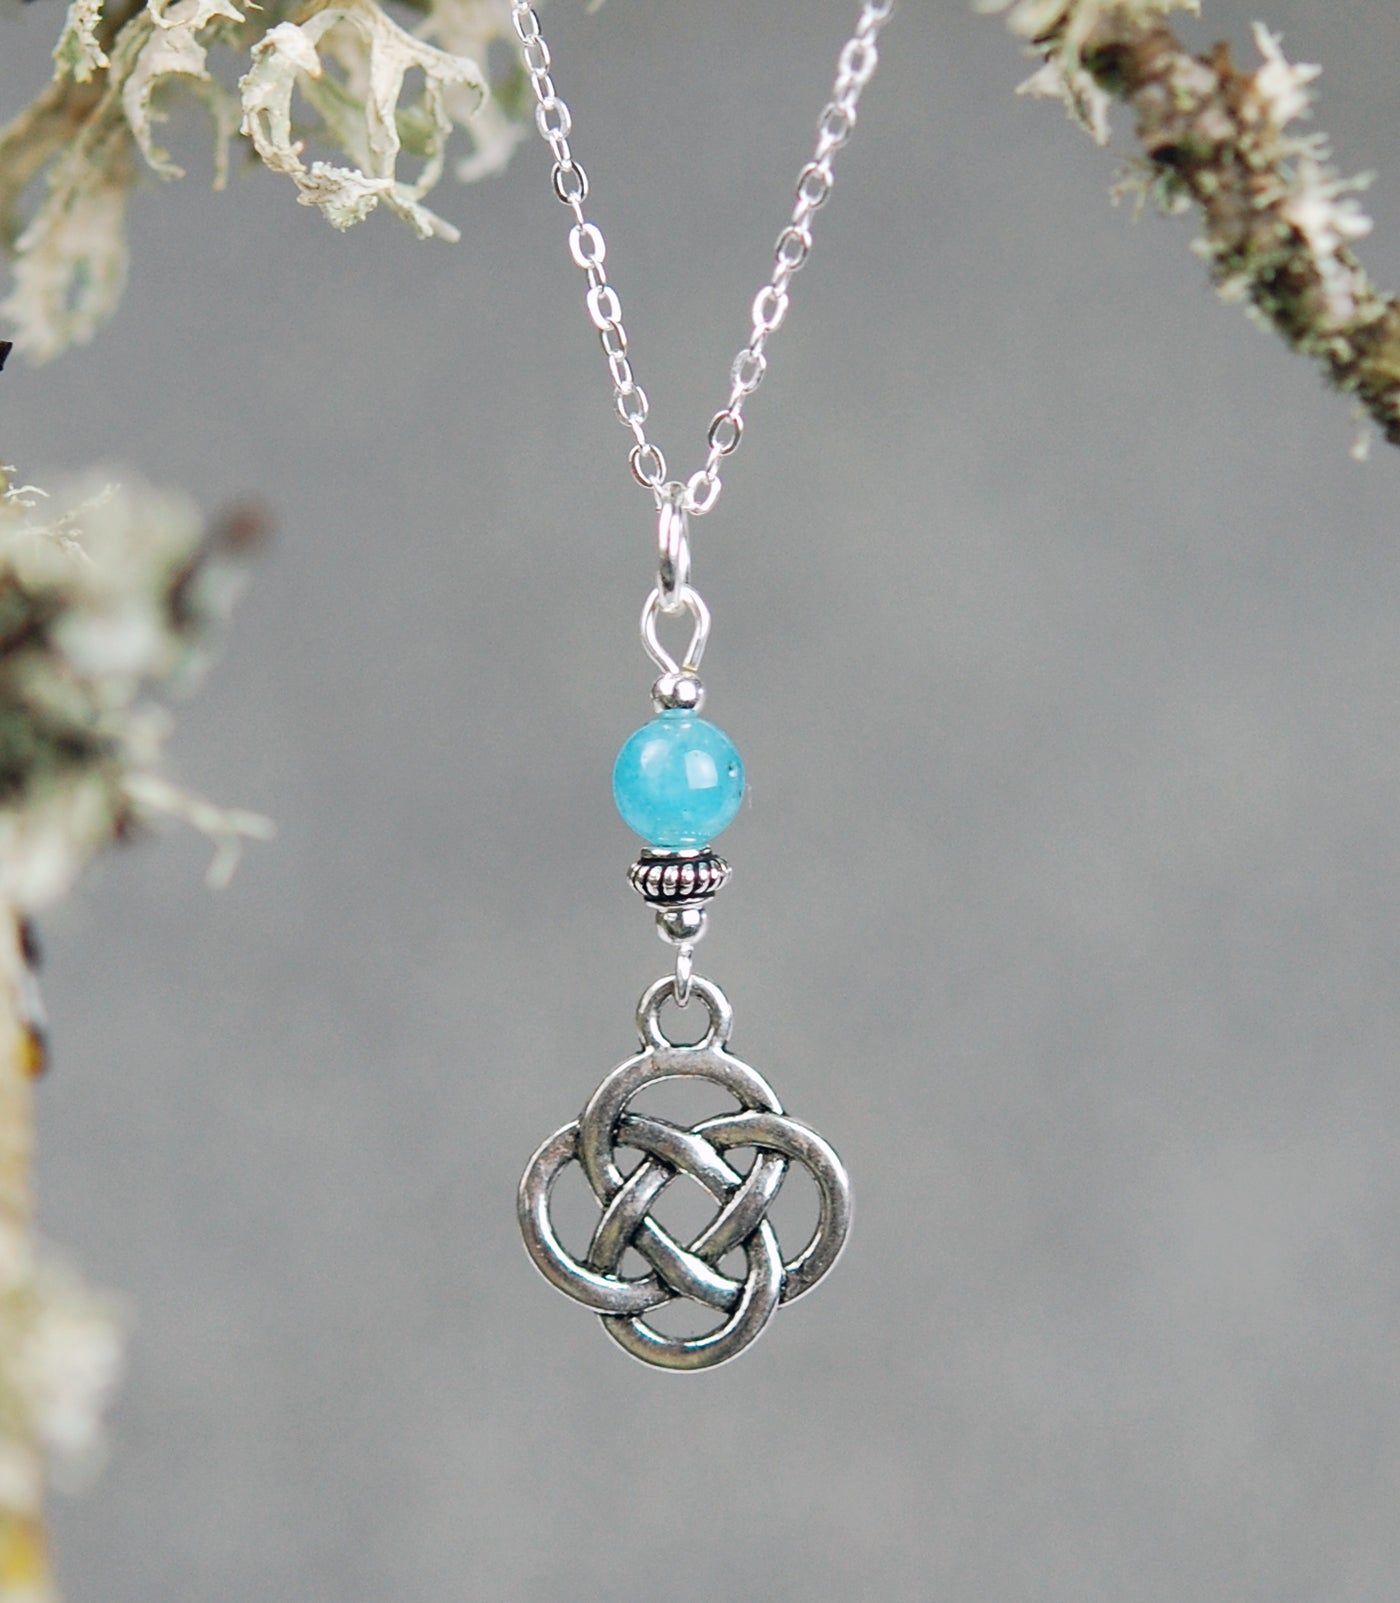 Aquamarine gemstone with Round Celtic Knot